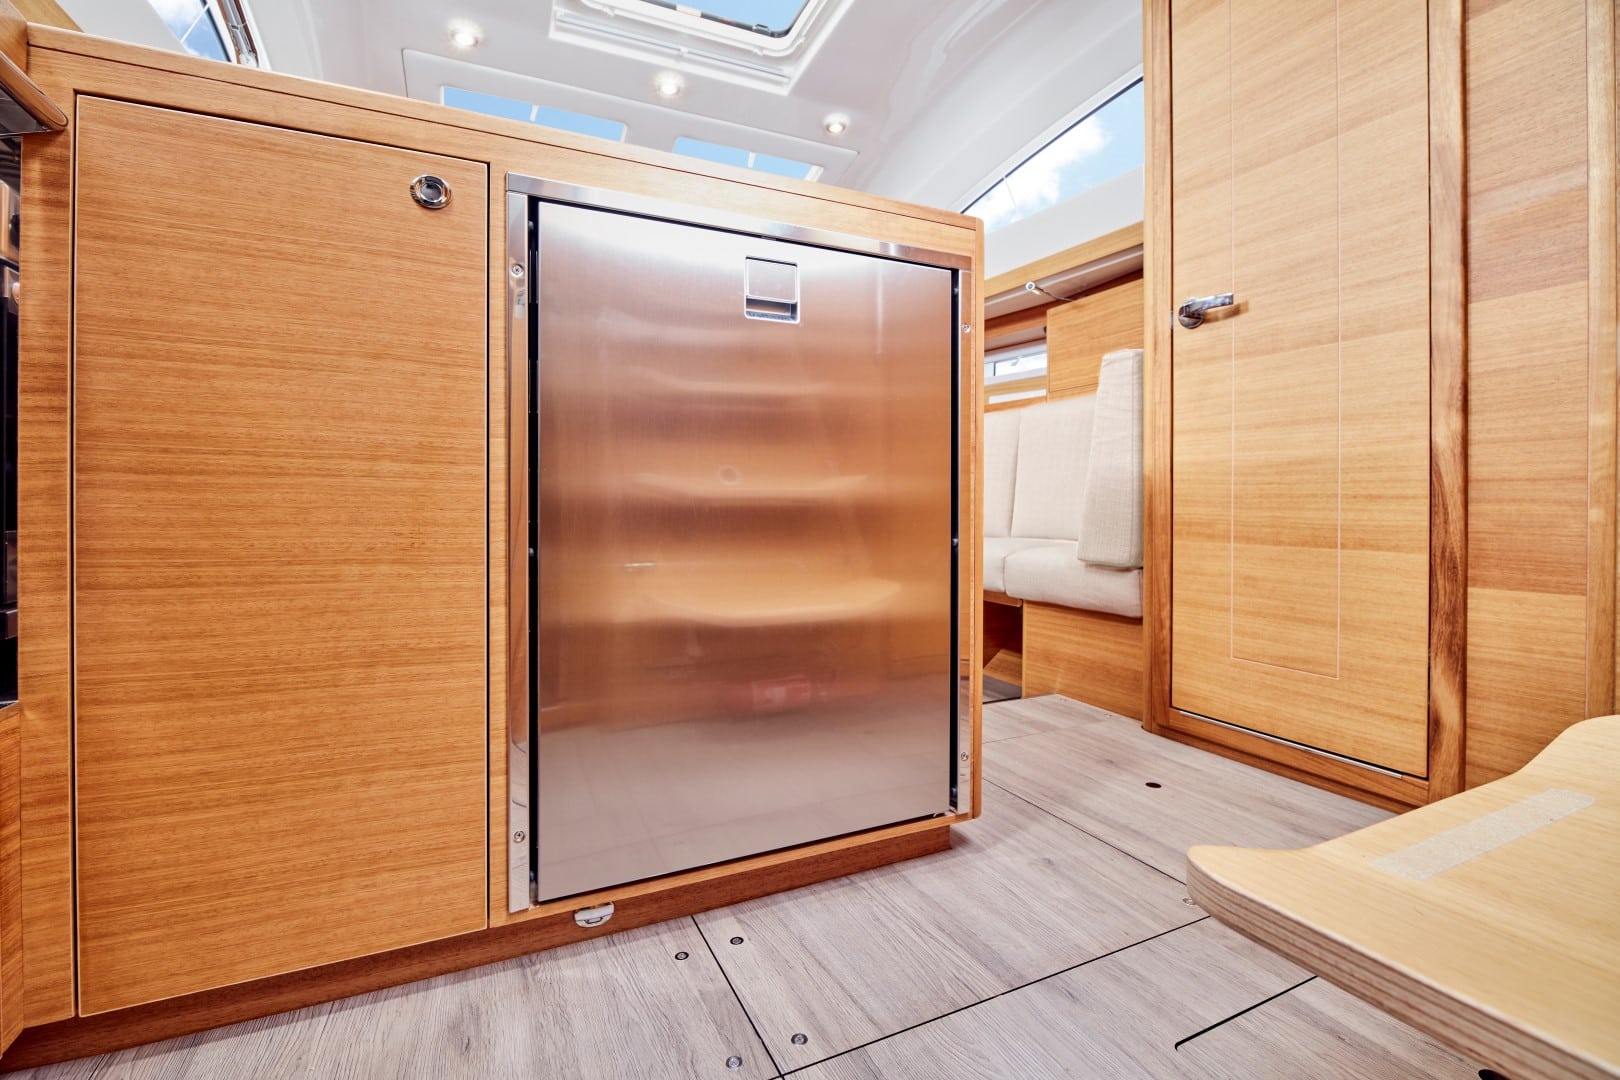 Innenansicht eines modernen Wohnmobils mit einer Glasschiebetür zwischen Holzschränken, die zu einer gemütlichen Sitzecke mit beiger Polsterung auf einer Segelyacht führt.